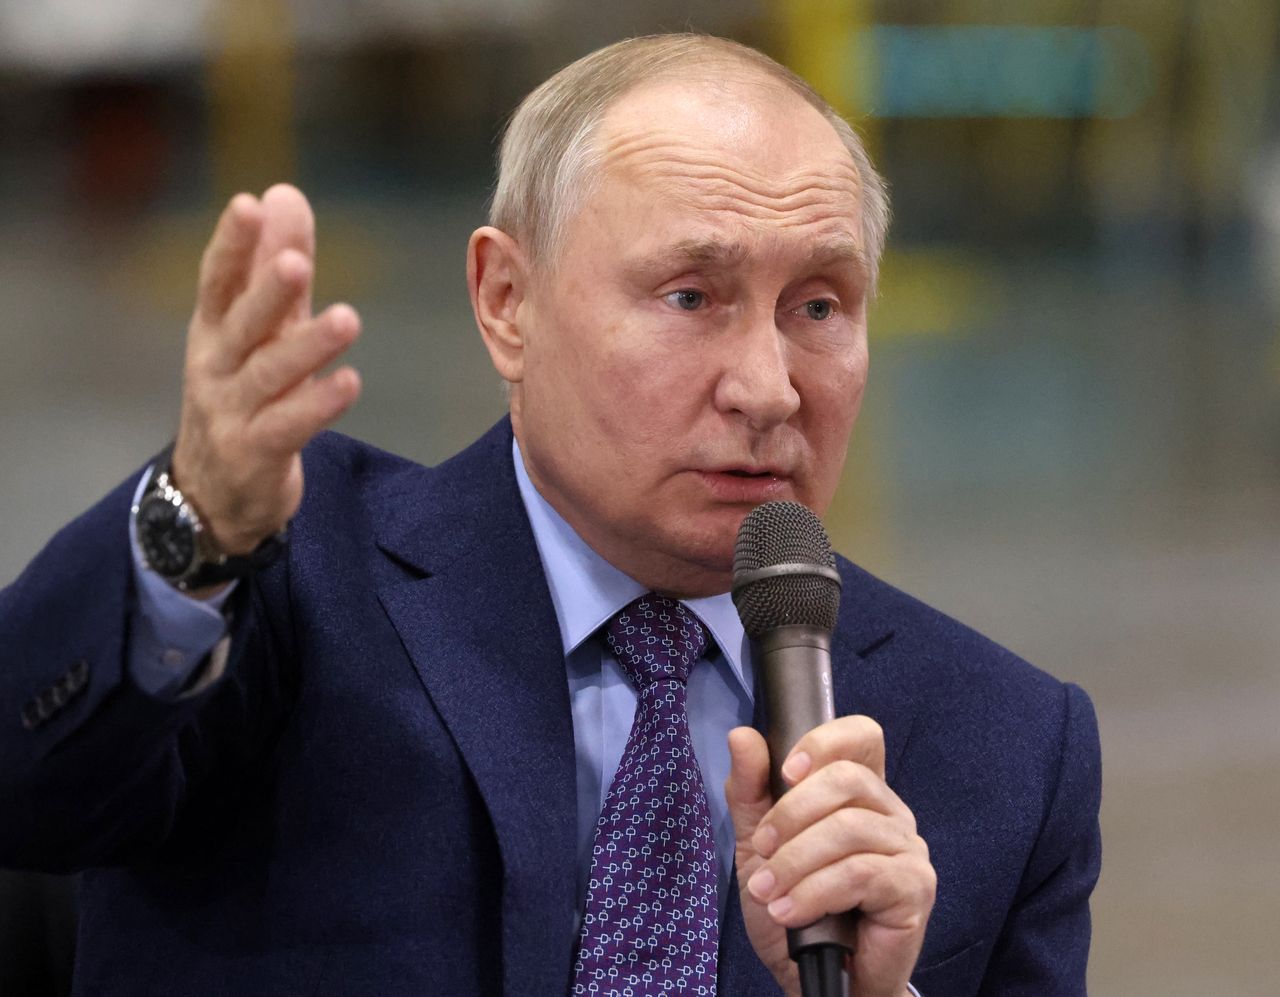 "I was surprised". Putin mocks Ukraine